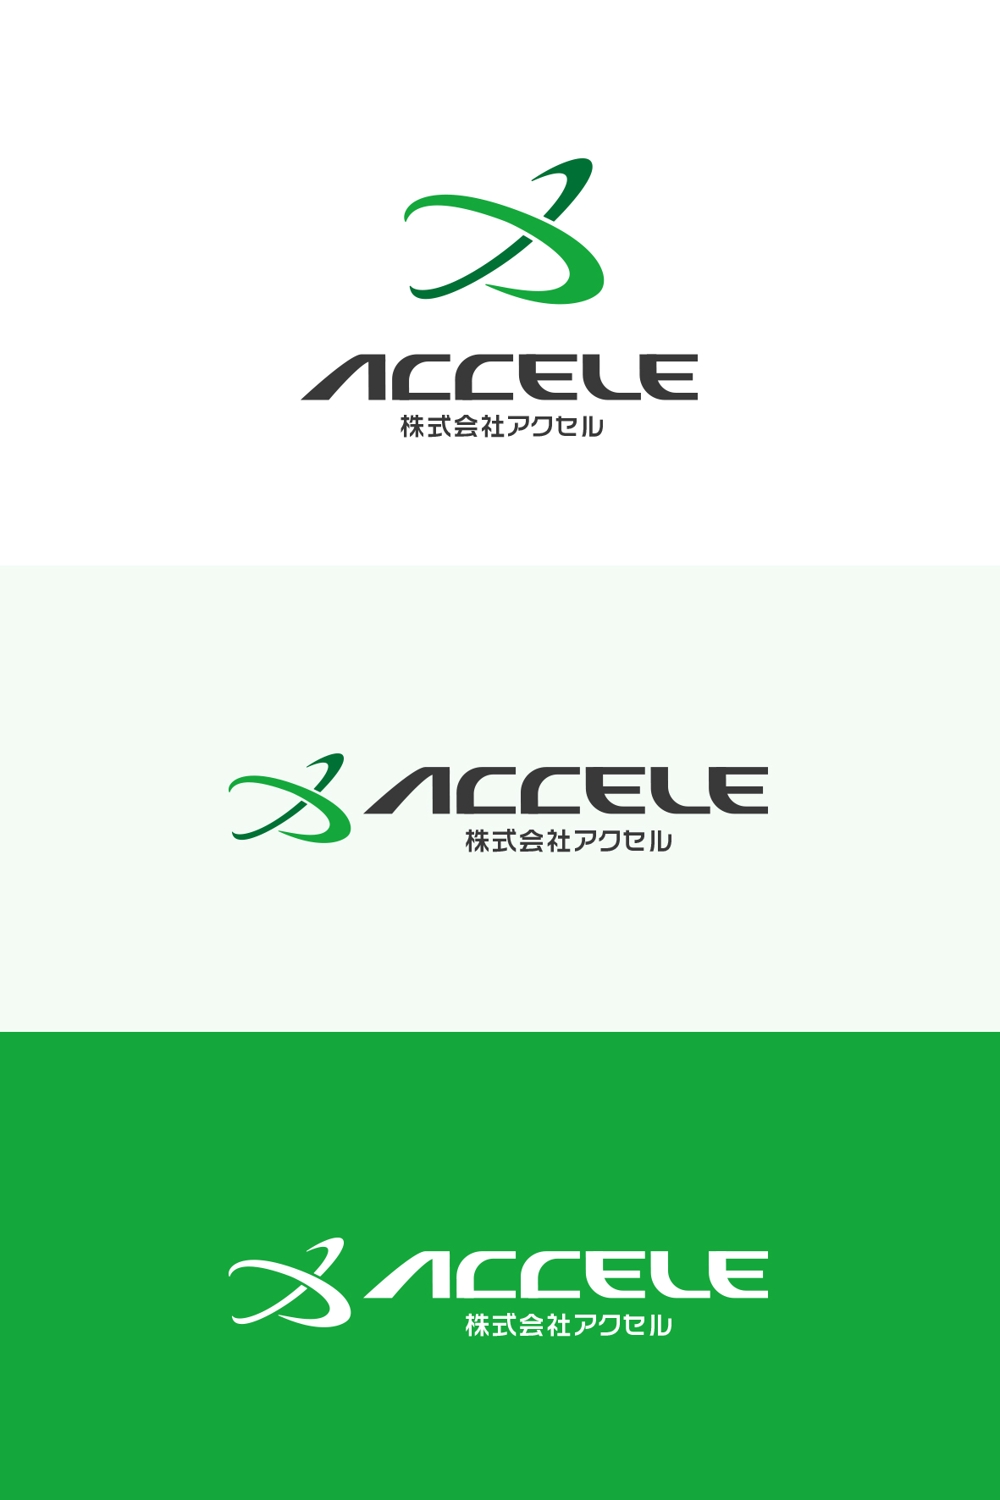 スポーツ用品の企画・製造・輸入の会社のロゴ